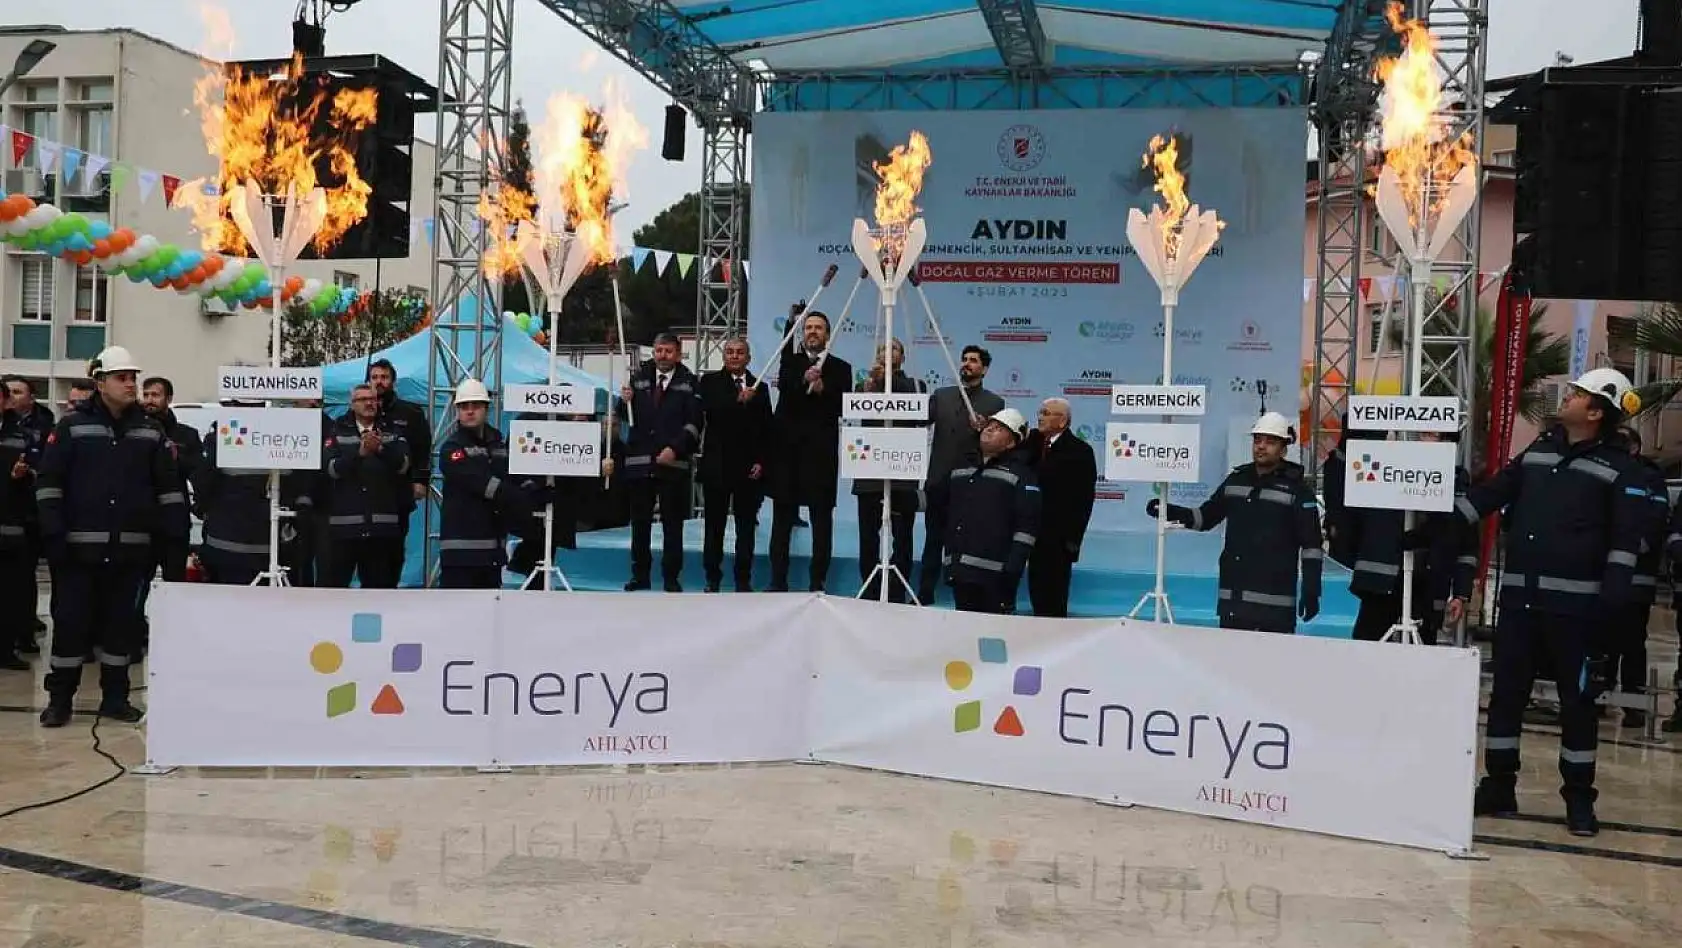 Cumhurbaşkanı Erdoğan, Koçarlı'nın doğalgazını ateşledi